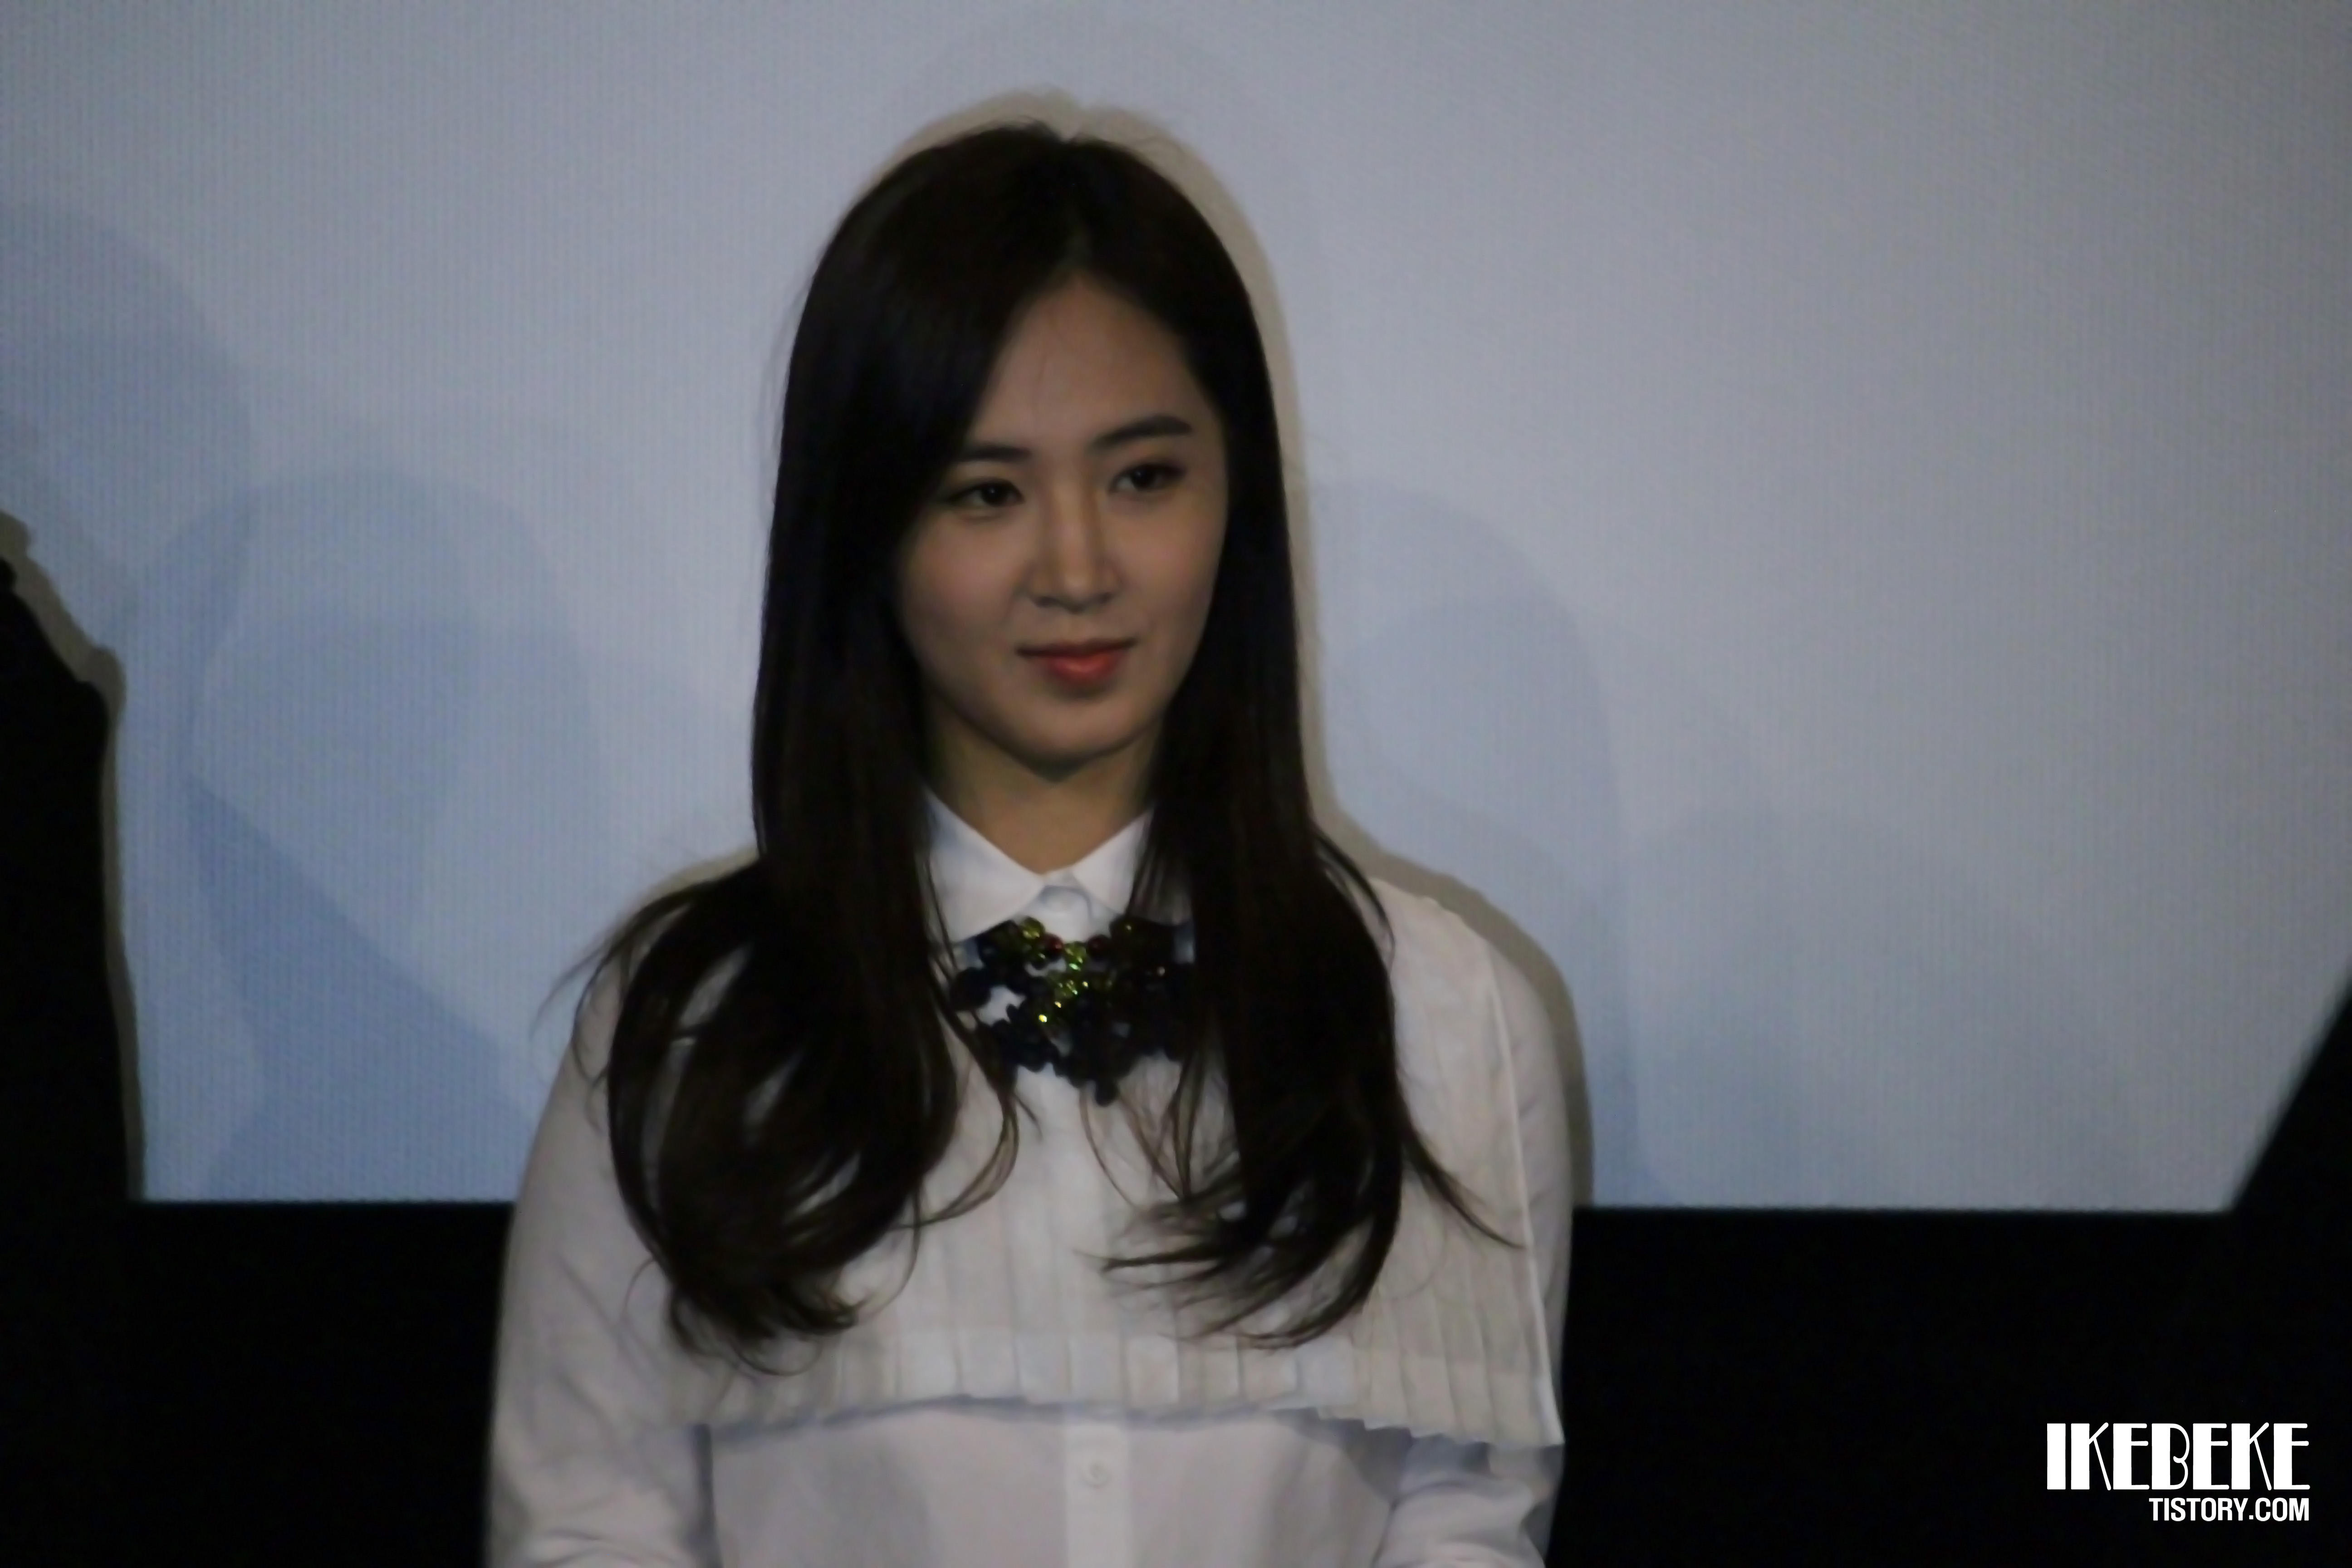 [PIC][07-11-2013]Yuri xuất hiện tại sự kiện "Lotte Cinema" Stage Greeting vào chiều nay + Selca của cô cùng các diễn viên khác 27404F3A527D2224059442